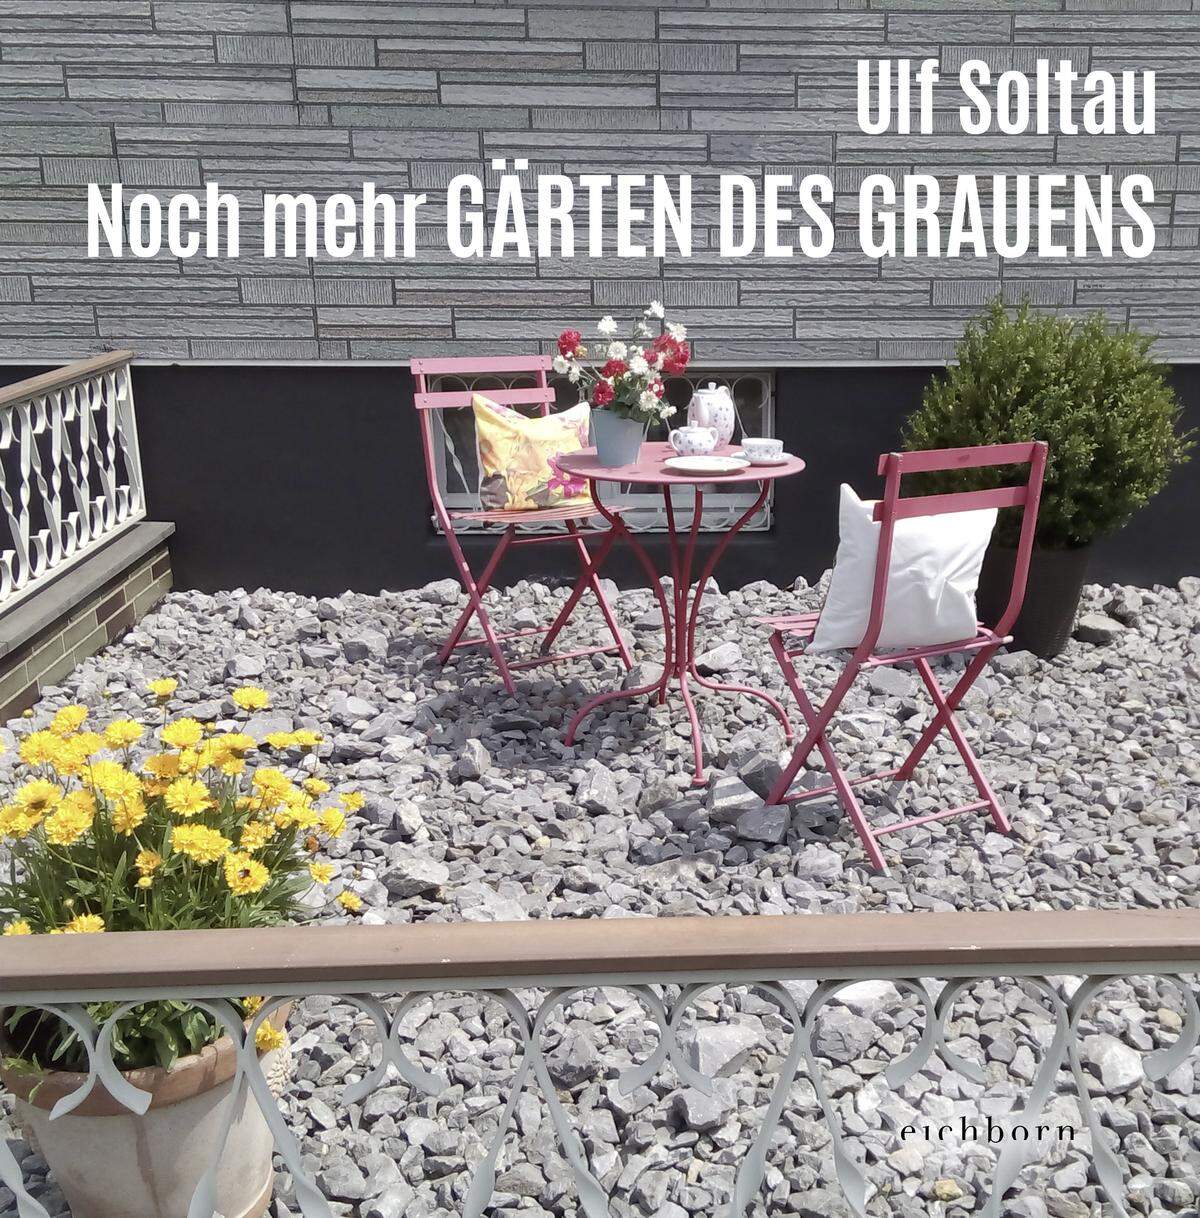 Der Nachfolgeband von "Gärten des Grauens" ist kürzlich im Eichborn Verlag erschienen: "Noch mehr Gärten des Grauens" von Ulf Soltau (2021). Ca. 128 Seiten, ab 14,40 Euro.